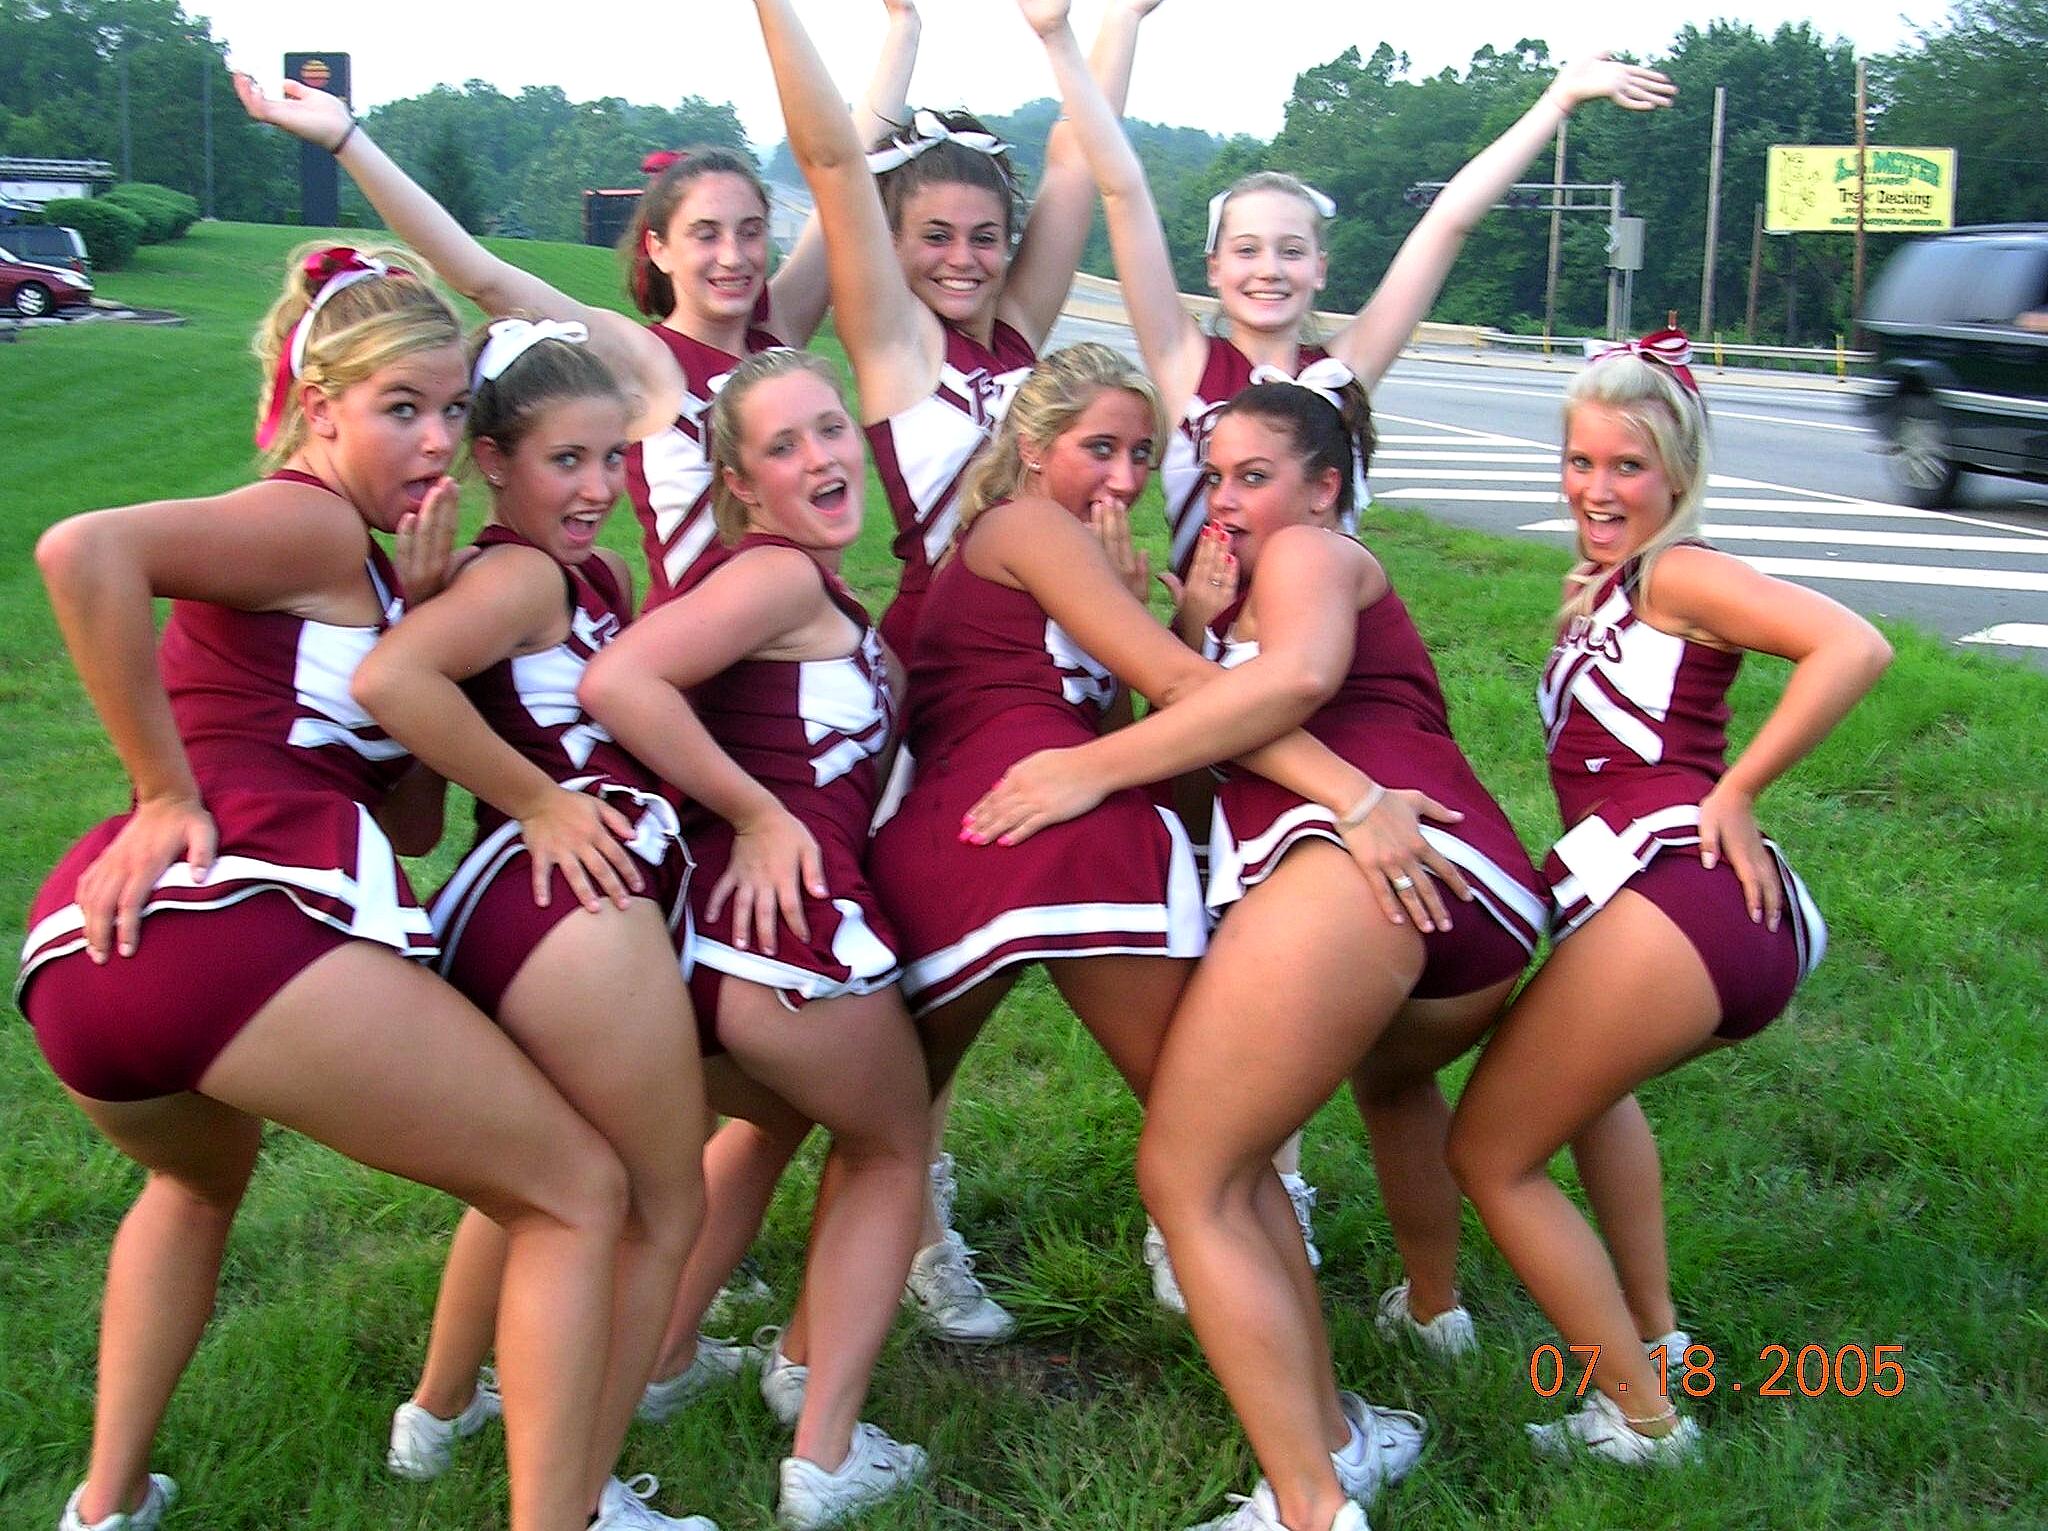 Cheerleaders upskirt pics picture